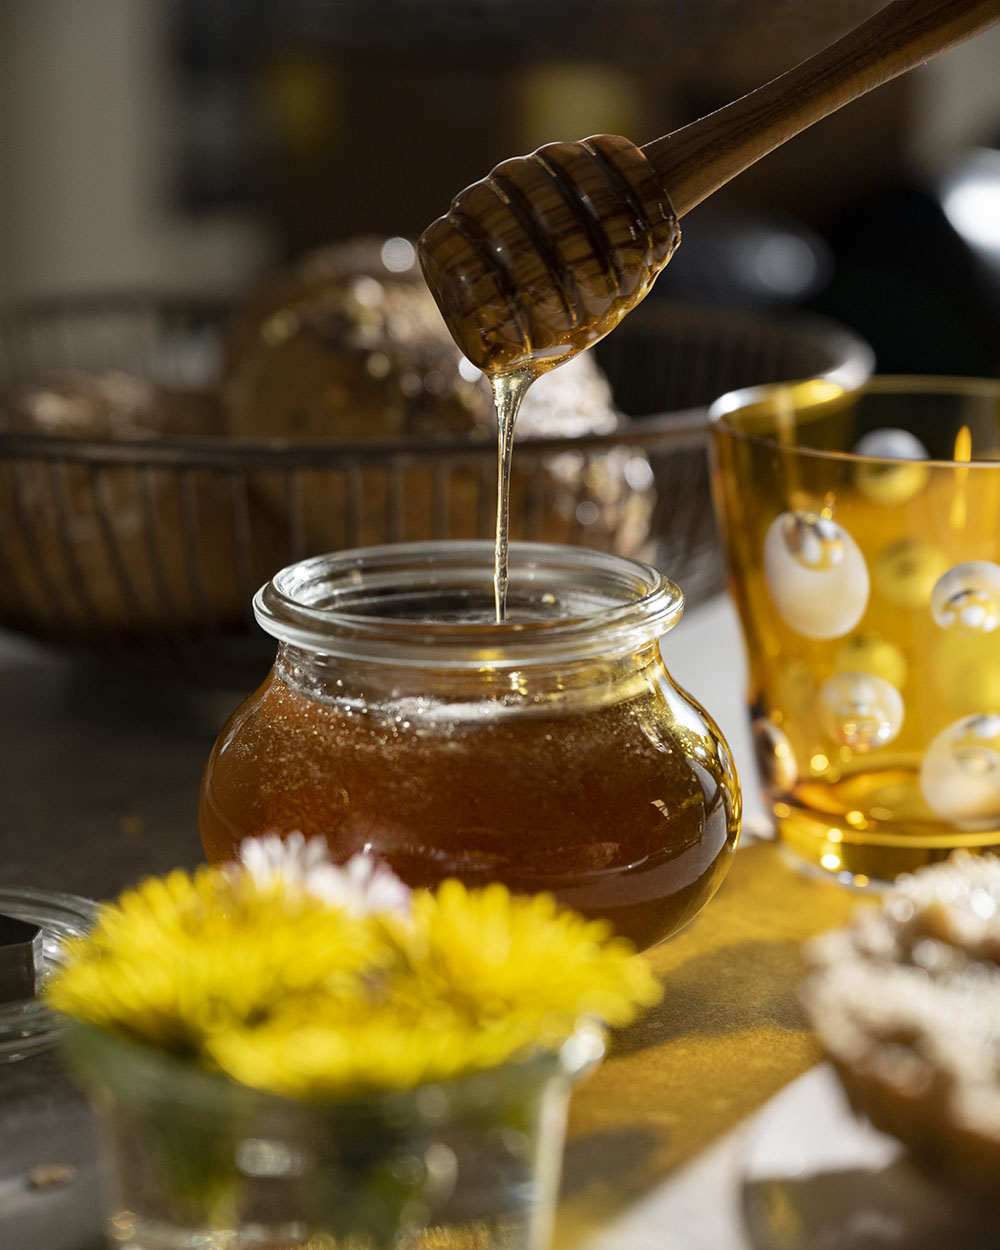 Wir tauchen einen Honiglöffel in ein Glas mit unserem selbst gemachten Löwenzahnhonig. Das Glas steht auf einem Frühstückstisch. Im Hintergrund ist ein Korb mit Brötchen zu sehen.